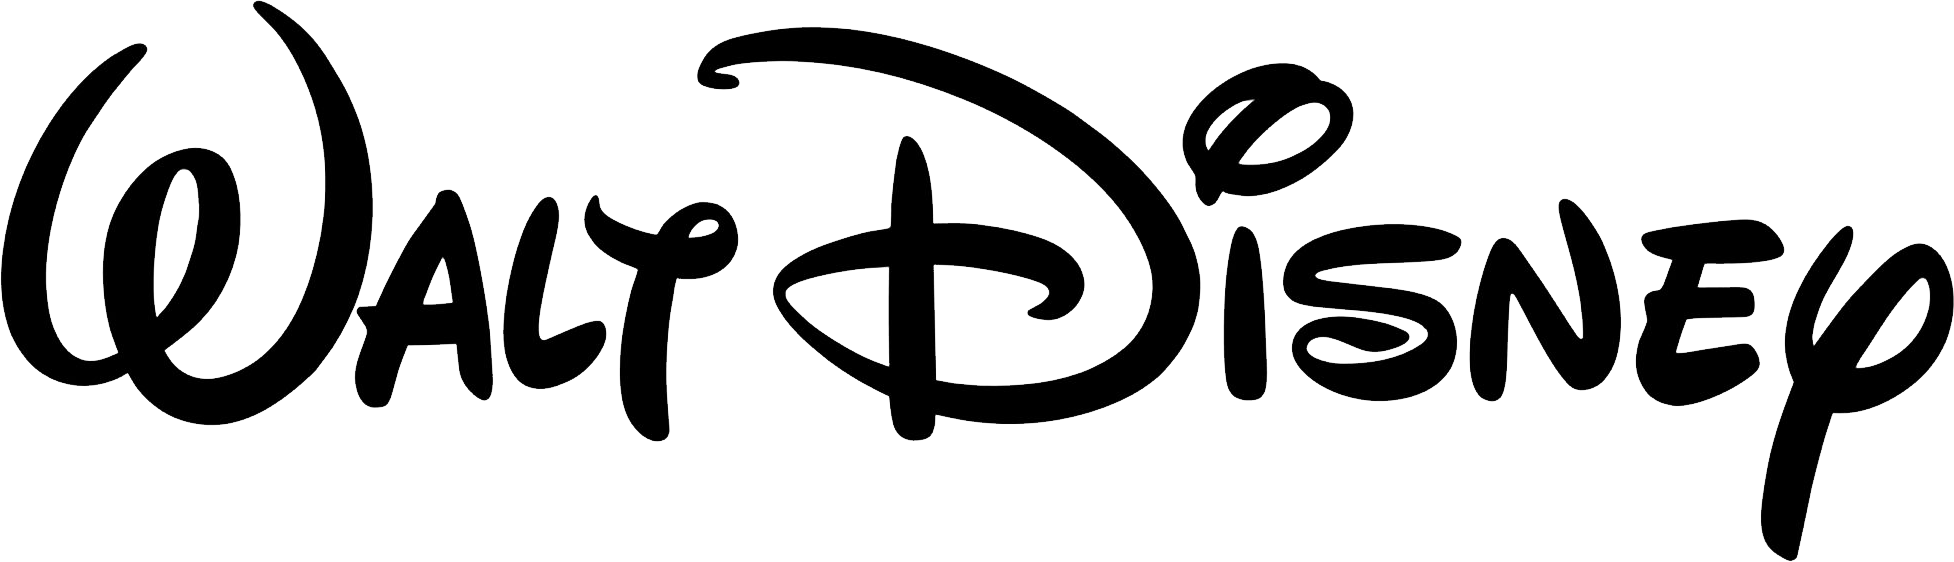 Walt Disney's Logo - Walt Disney logo PNG image free download